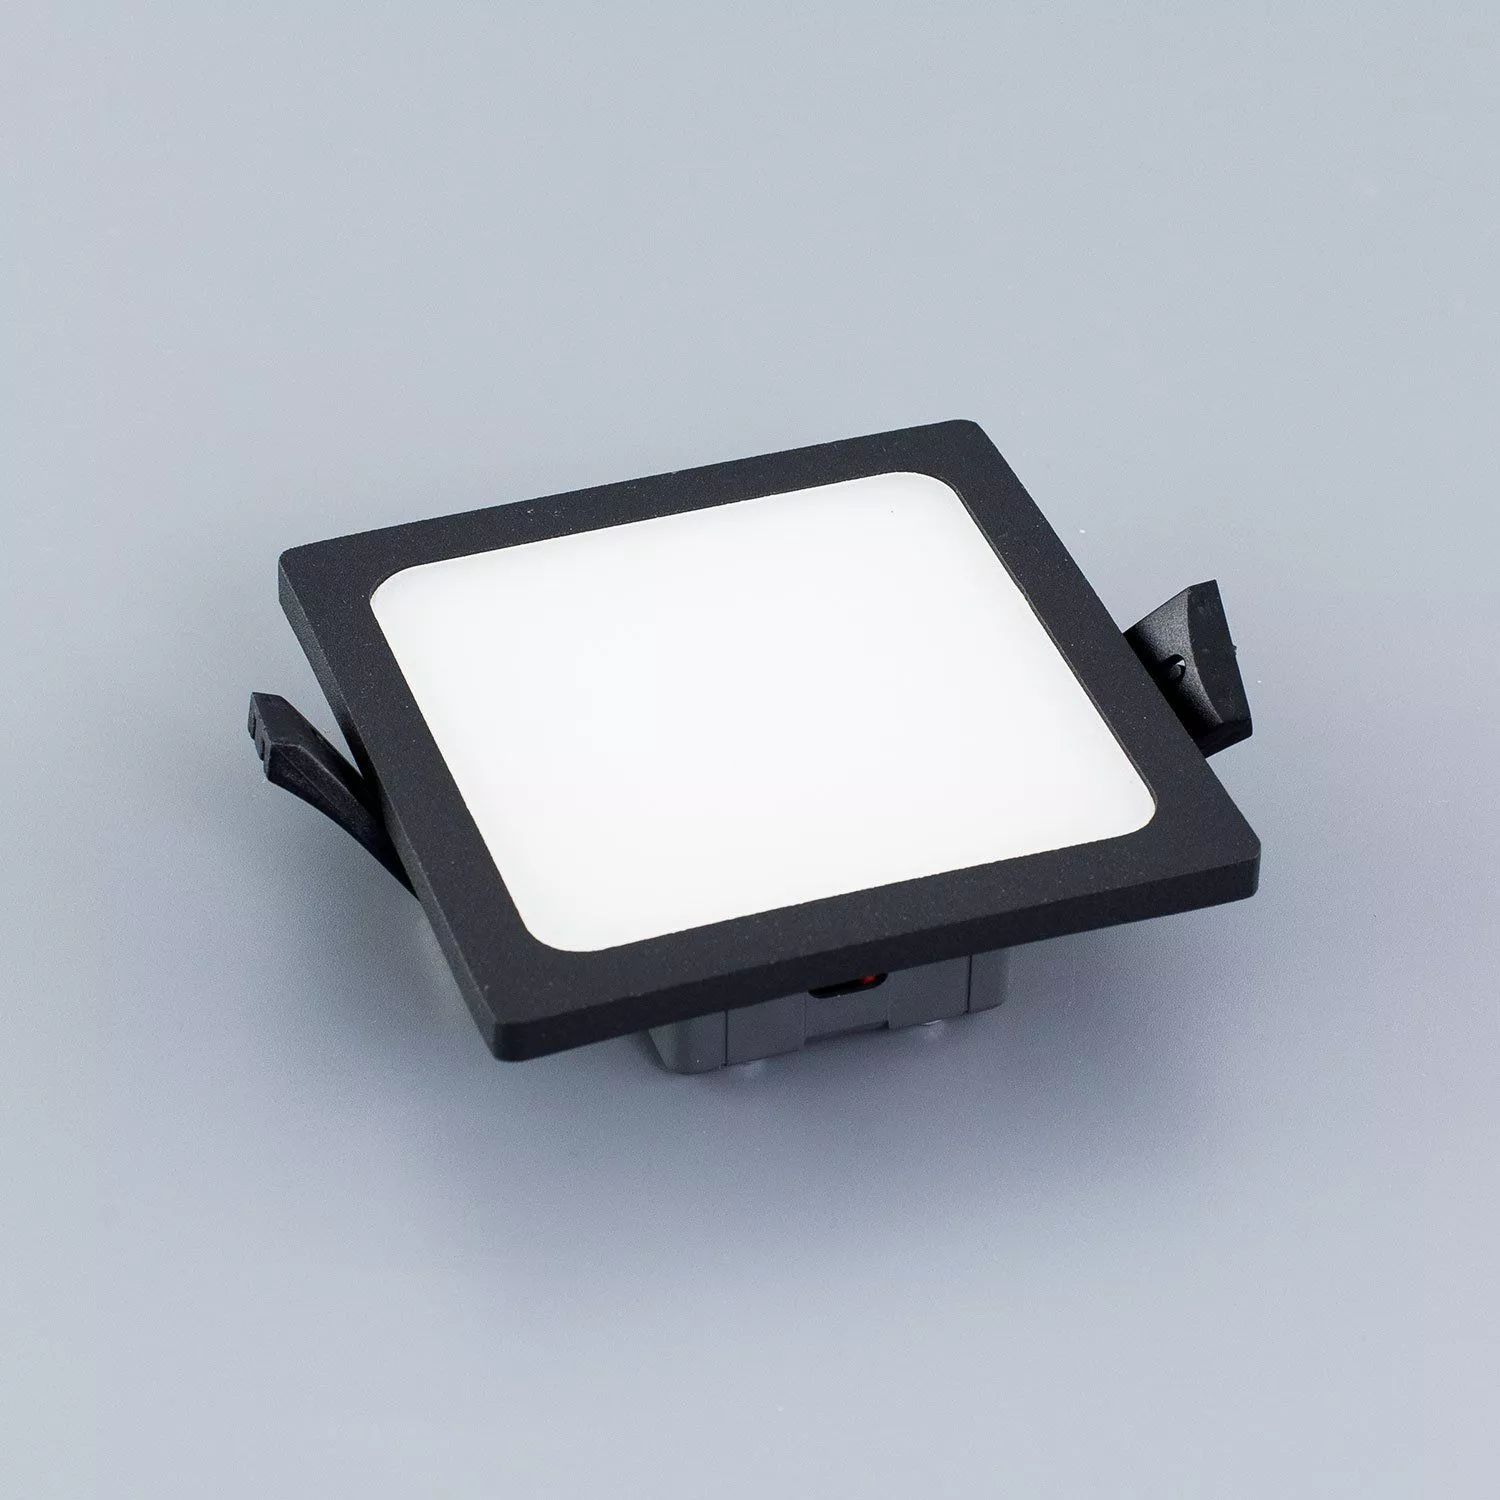 Встраиваемый светильник Омега D 90 черный Citilux CLD50K082